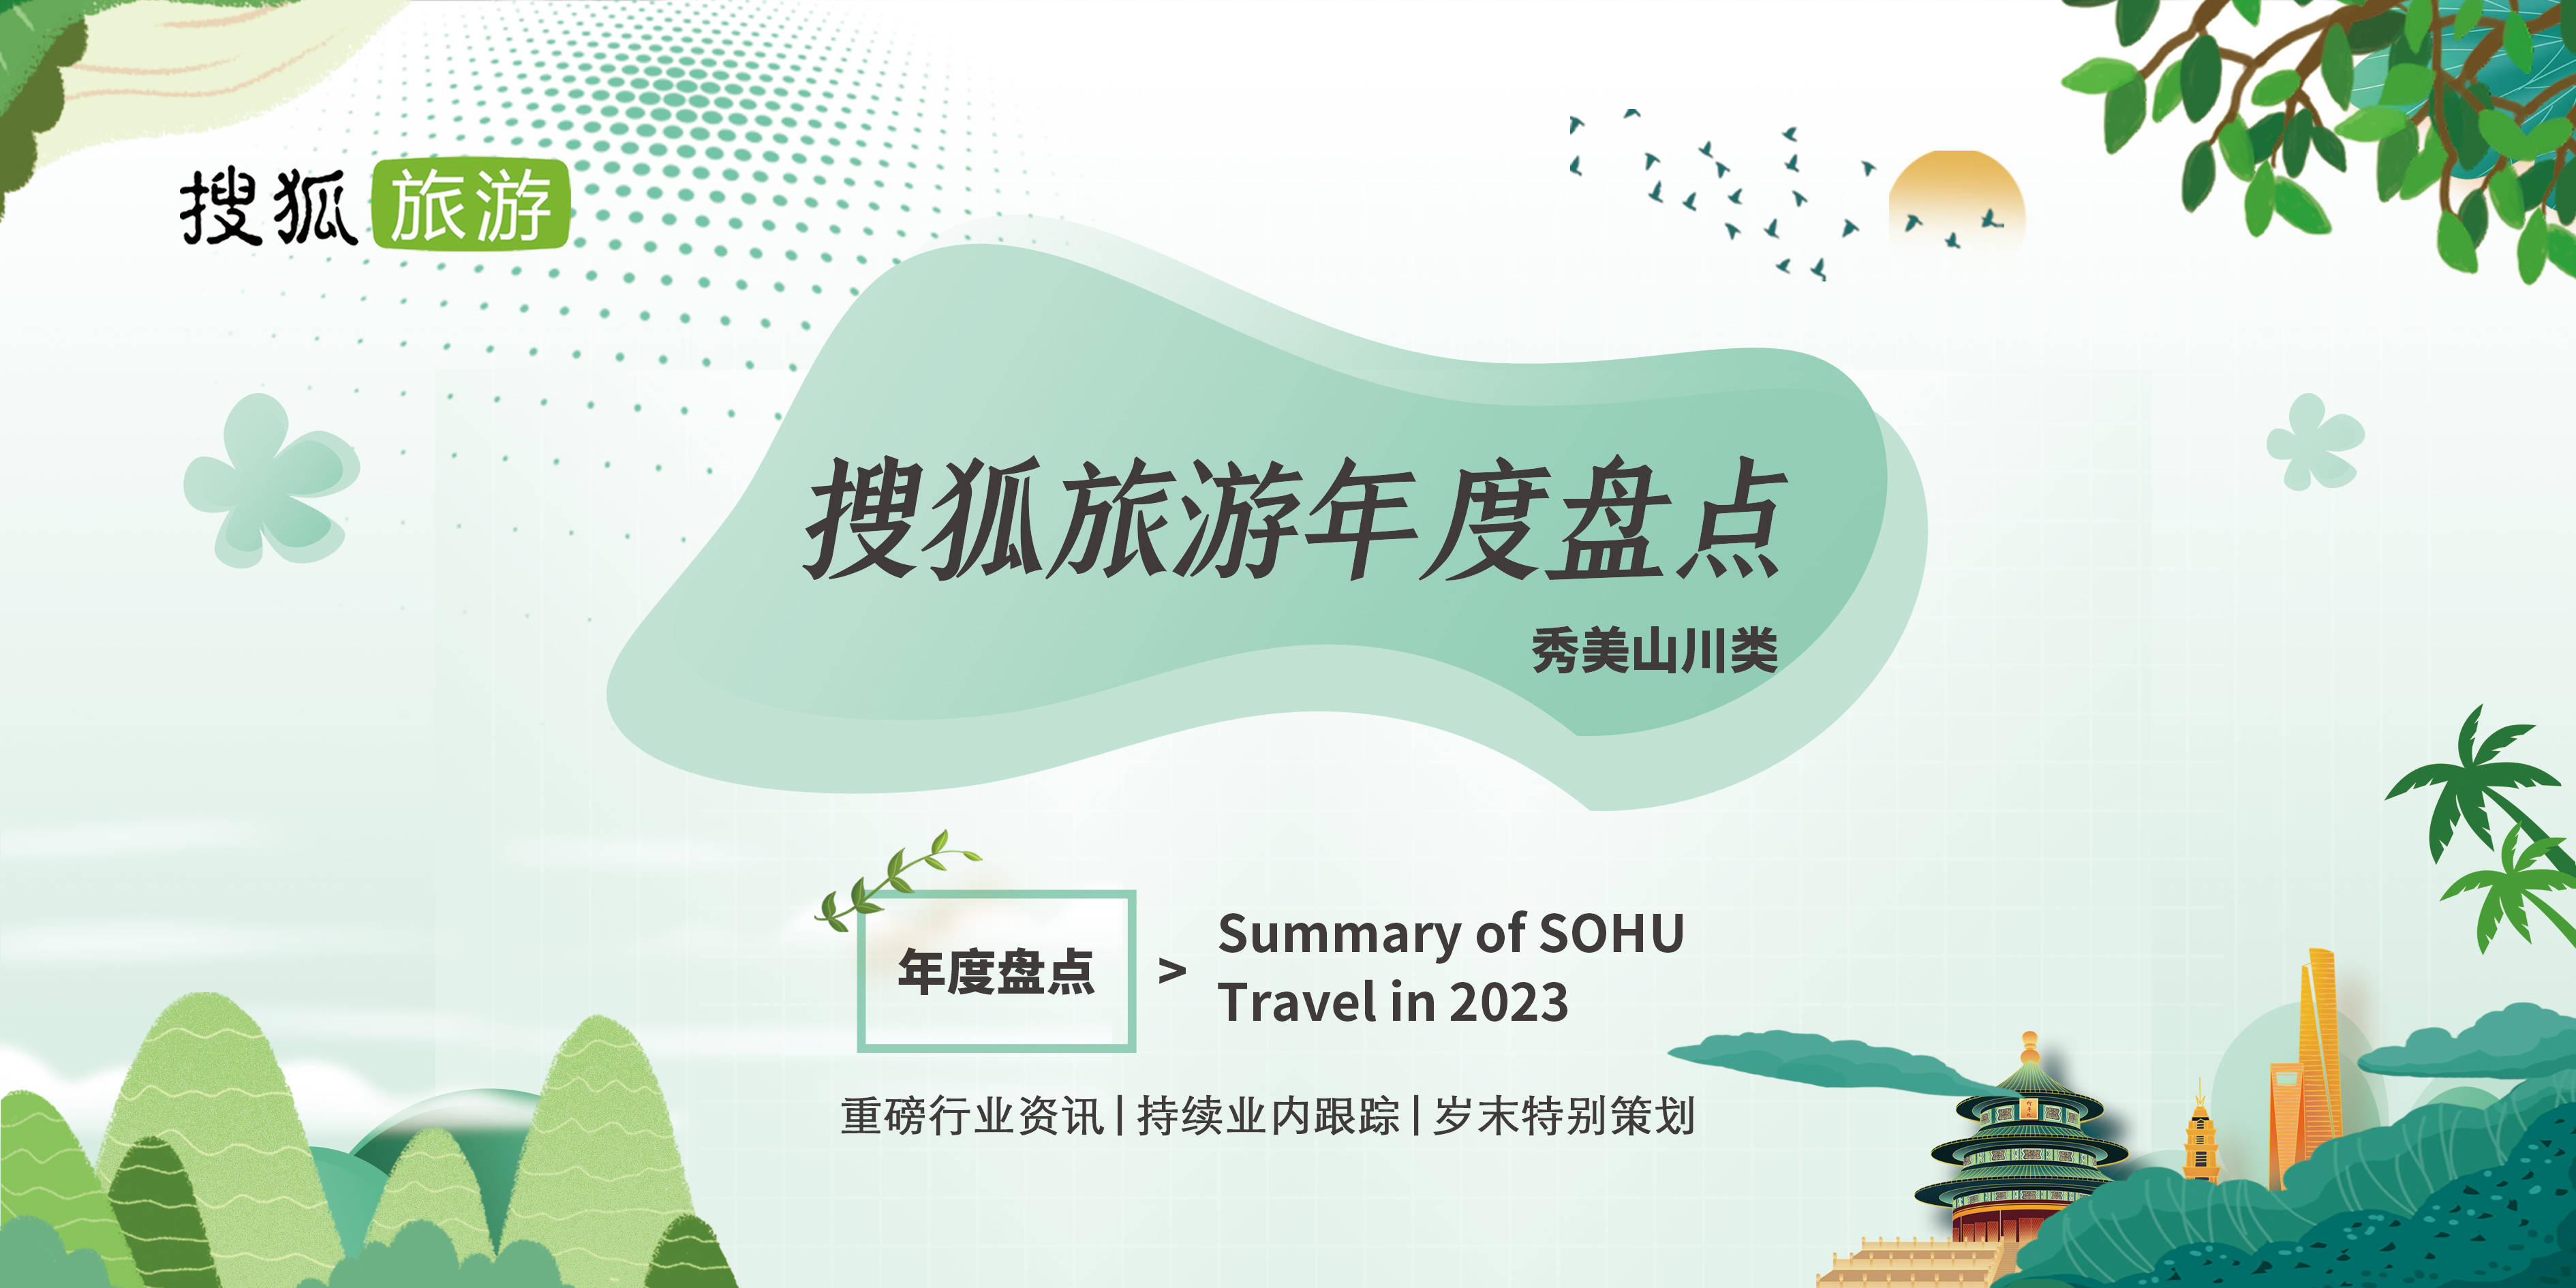 必赢体育搜狐旅游年度盘点 2023年度人气口碑景区-秀美山川类Top50